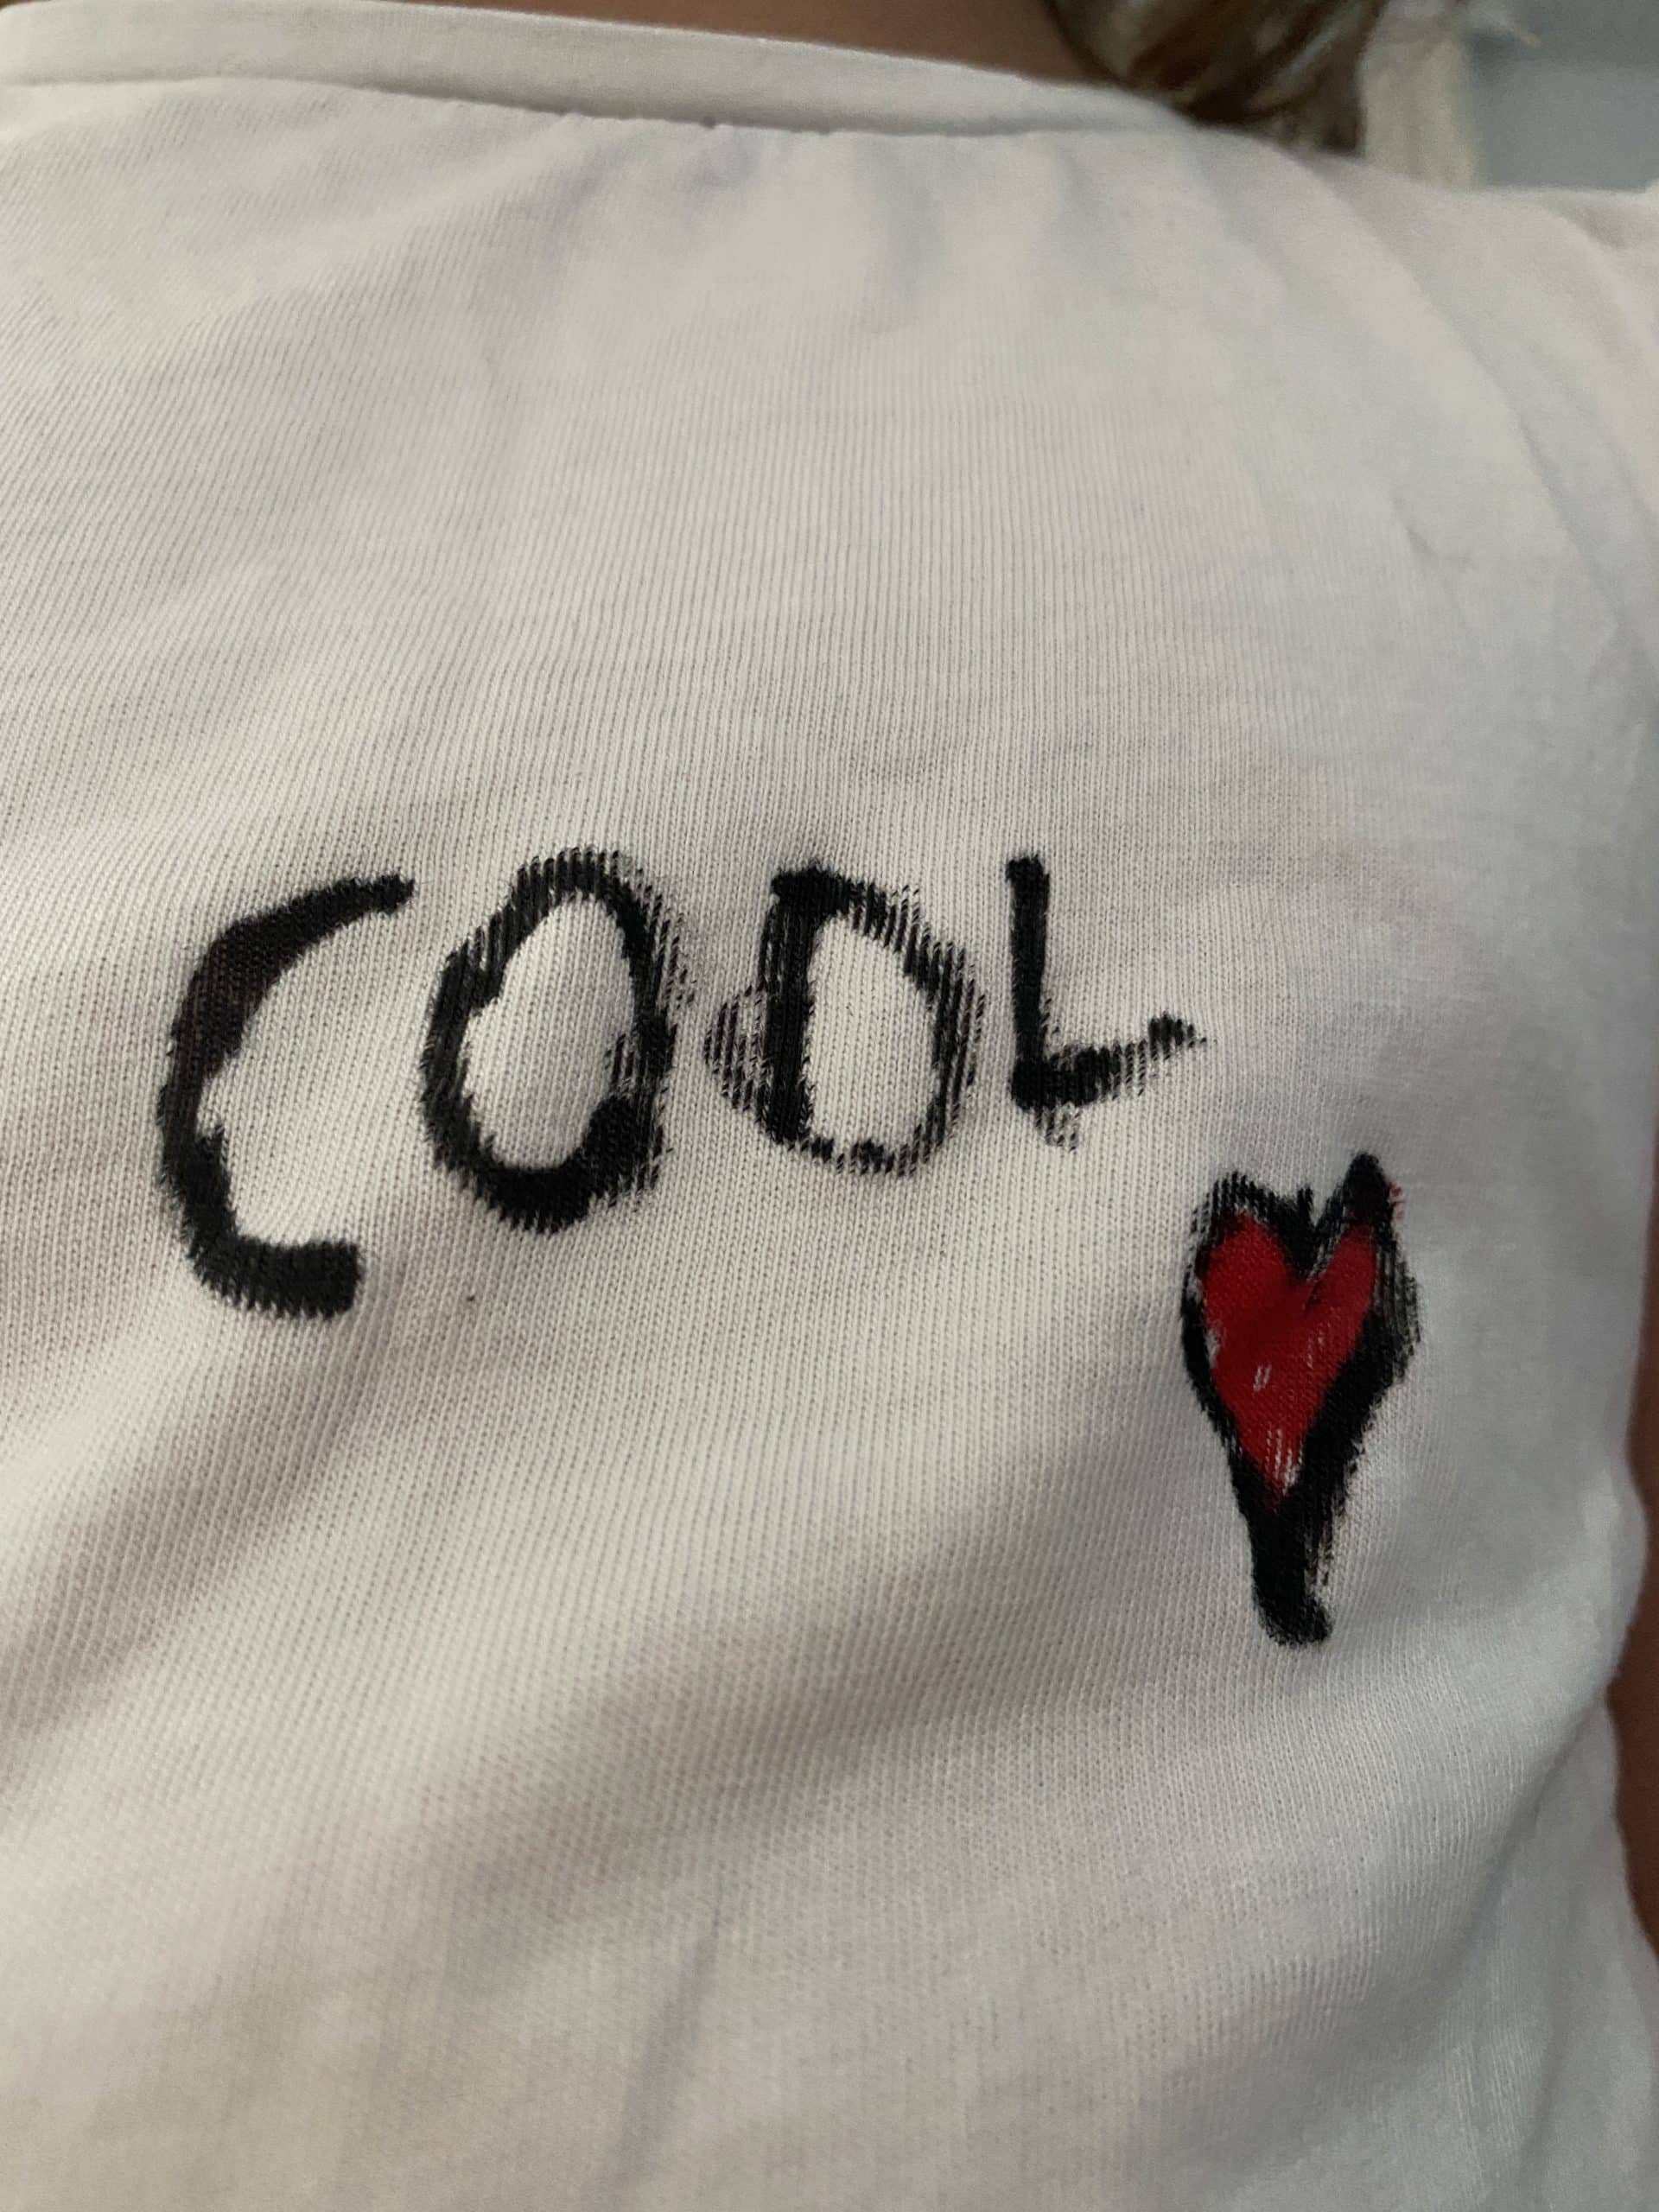 #4 Währenddessen bemalt die Jüngste ein T-Shirt. Sie kann jetzt "cool" schreiben.